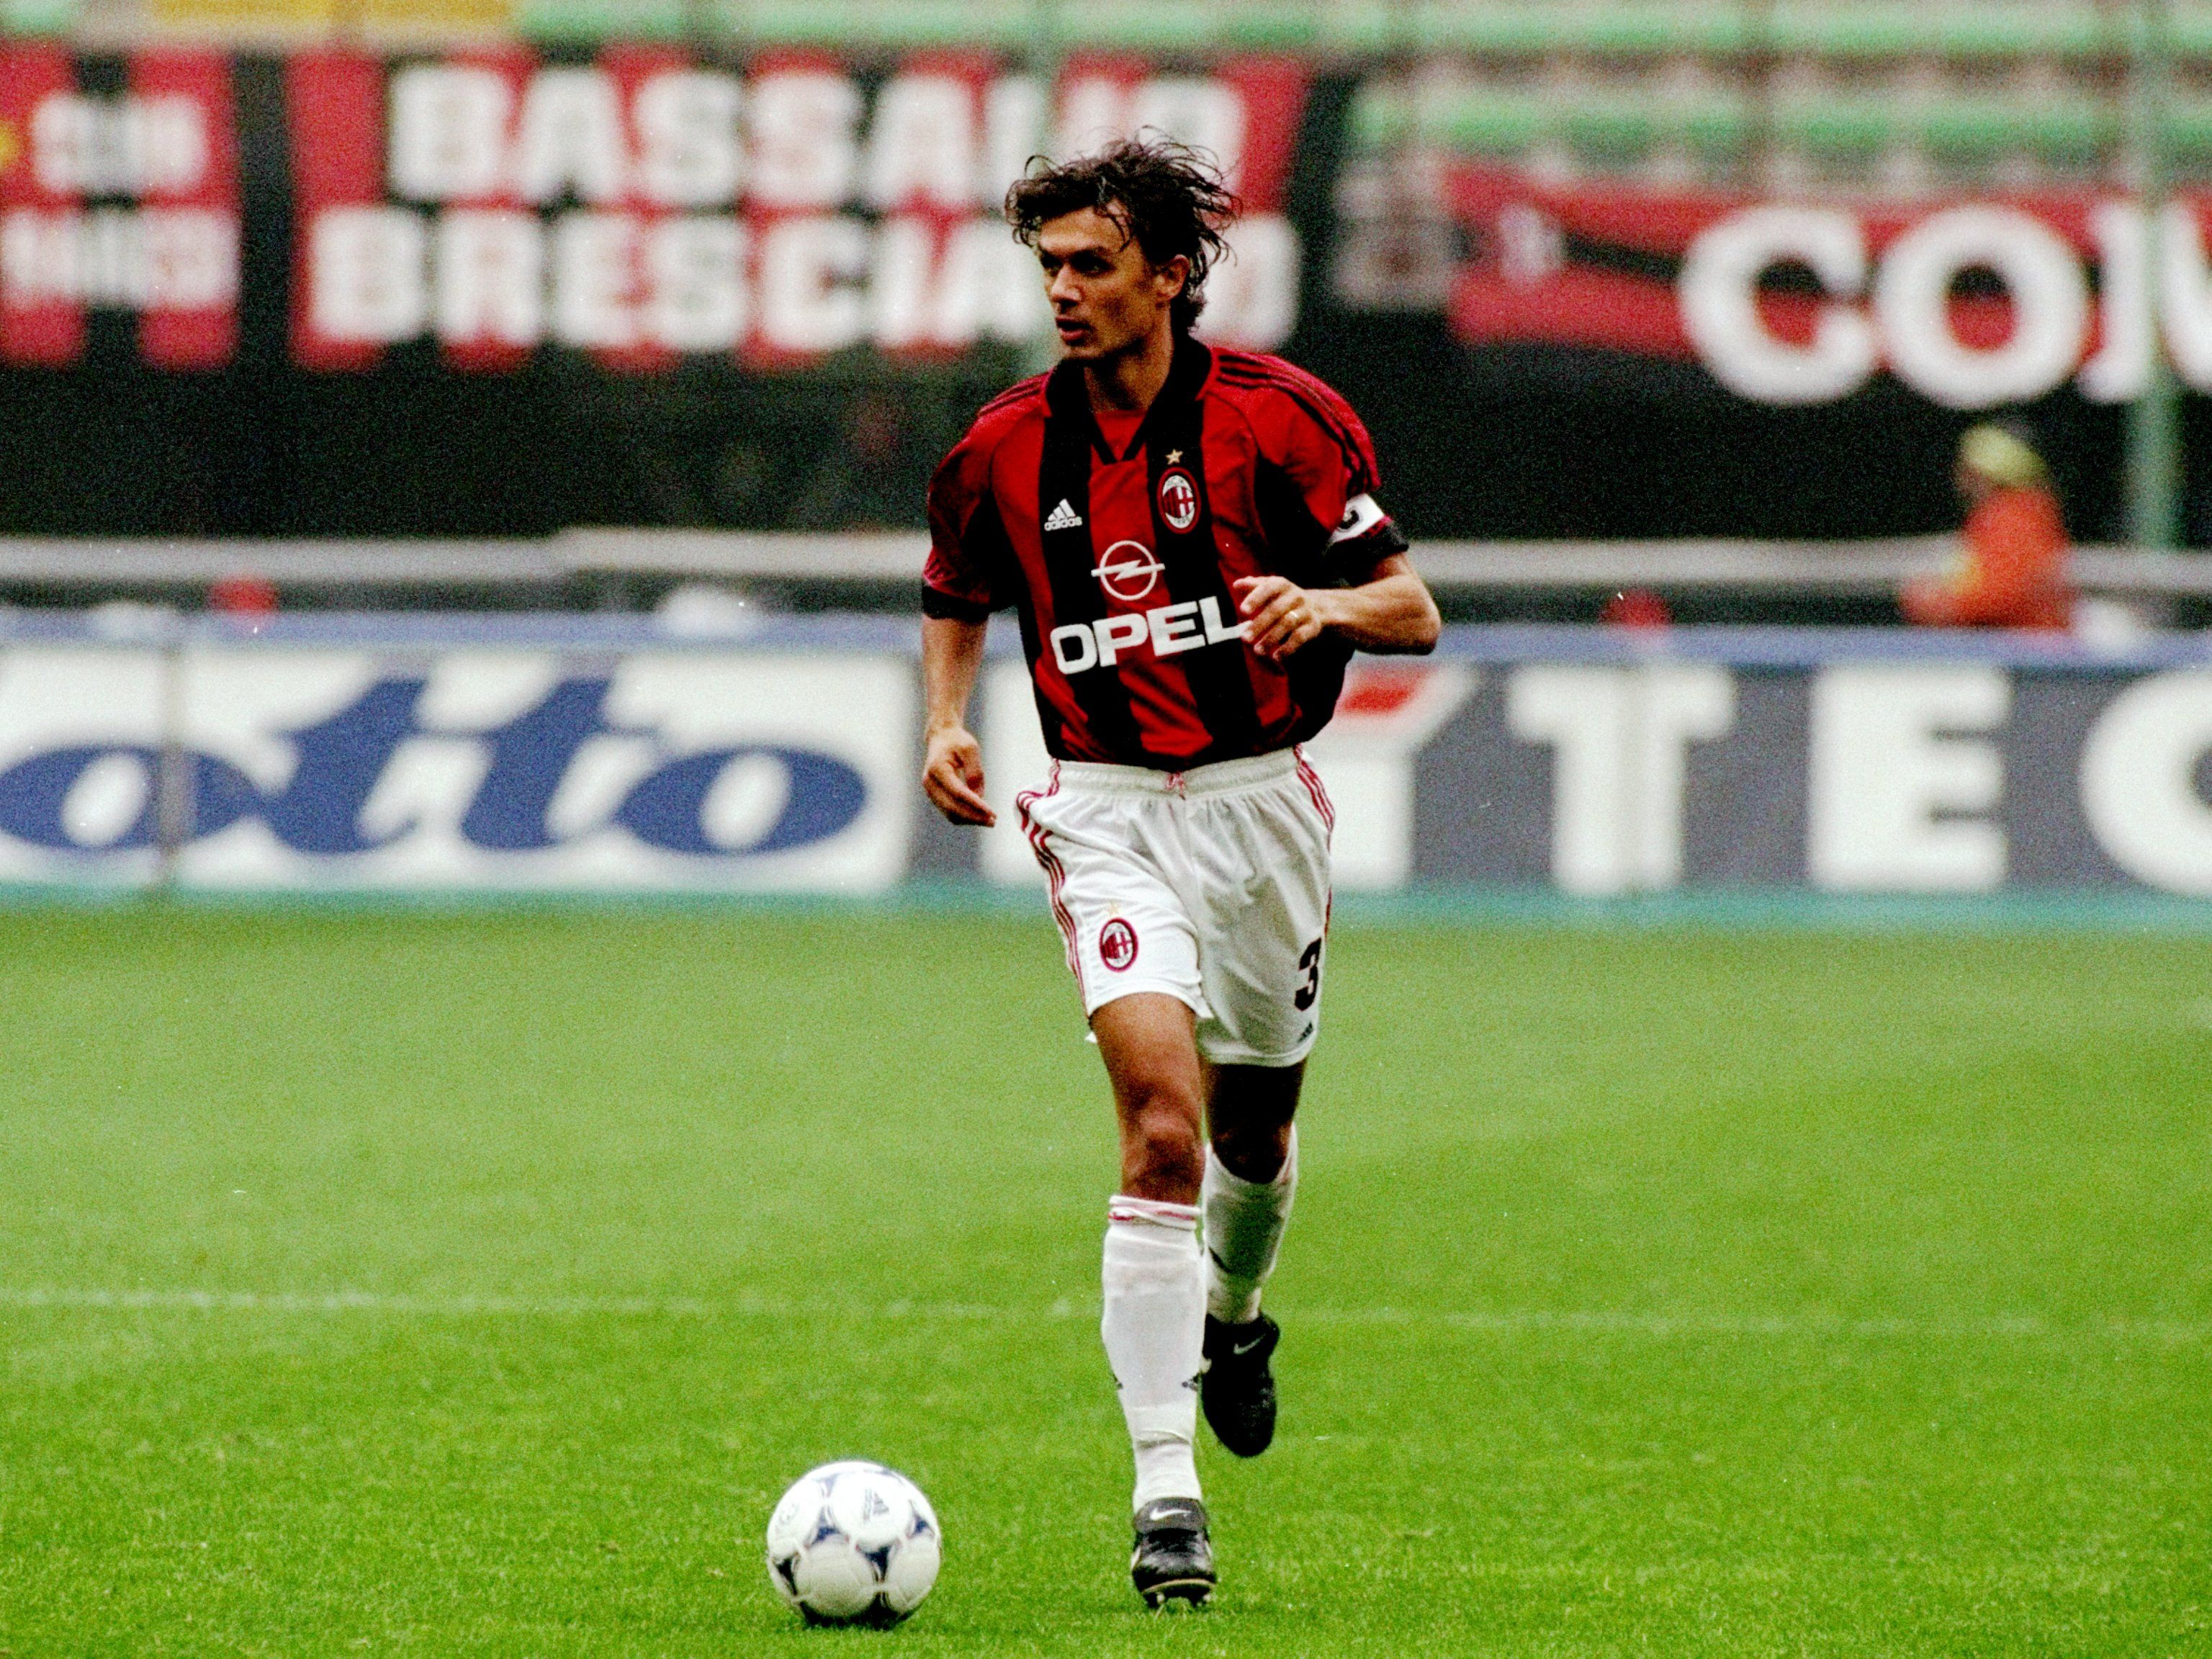 Paolo Maldini with AC Milan